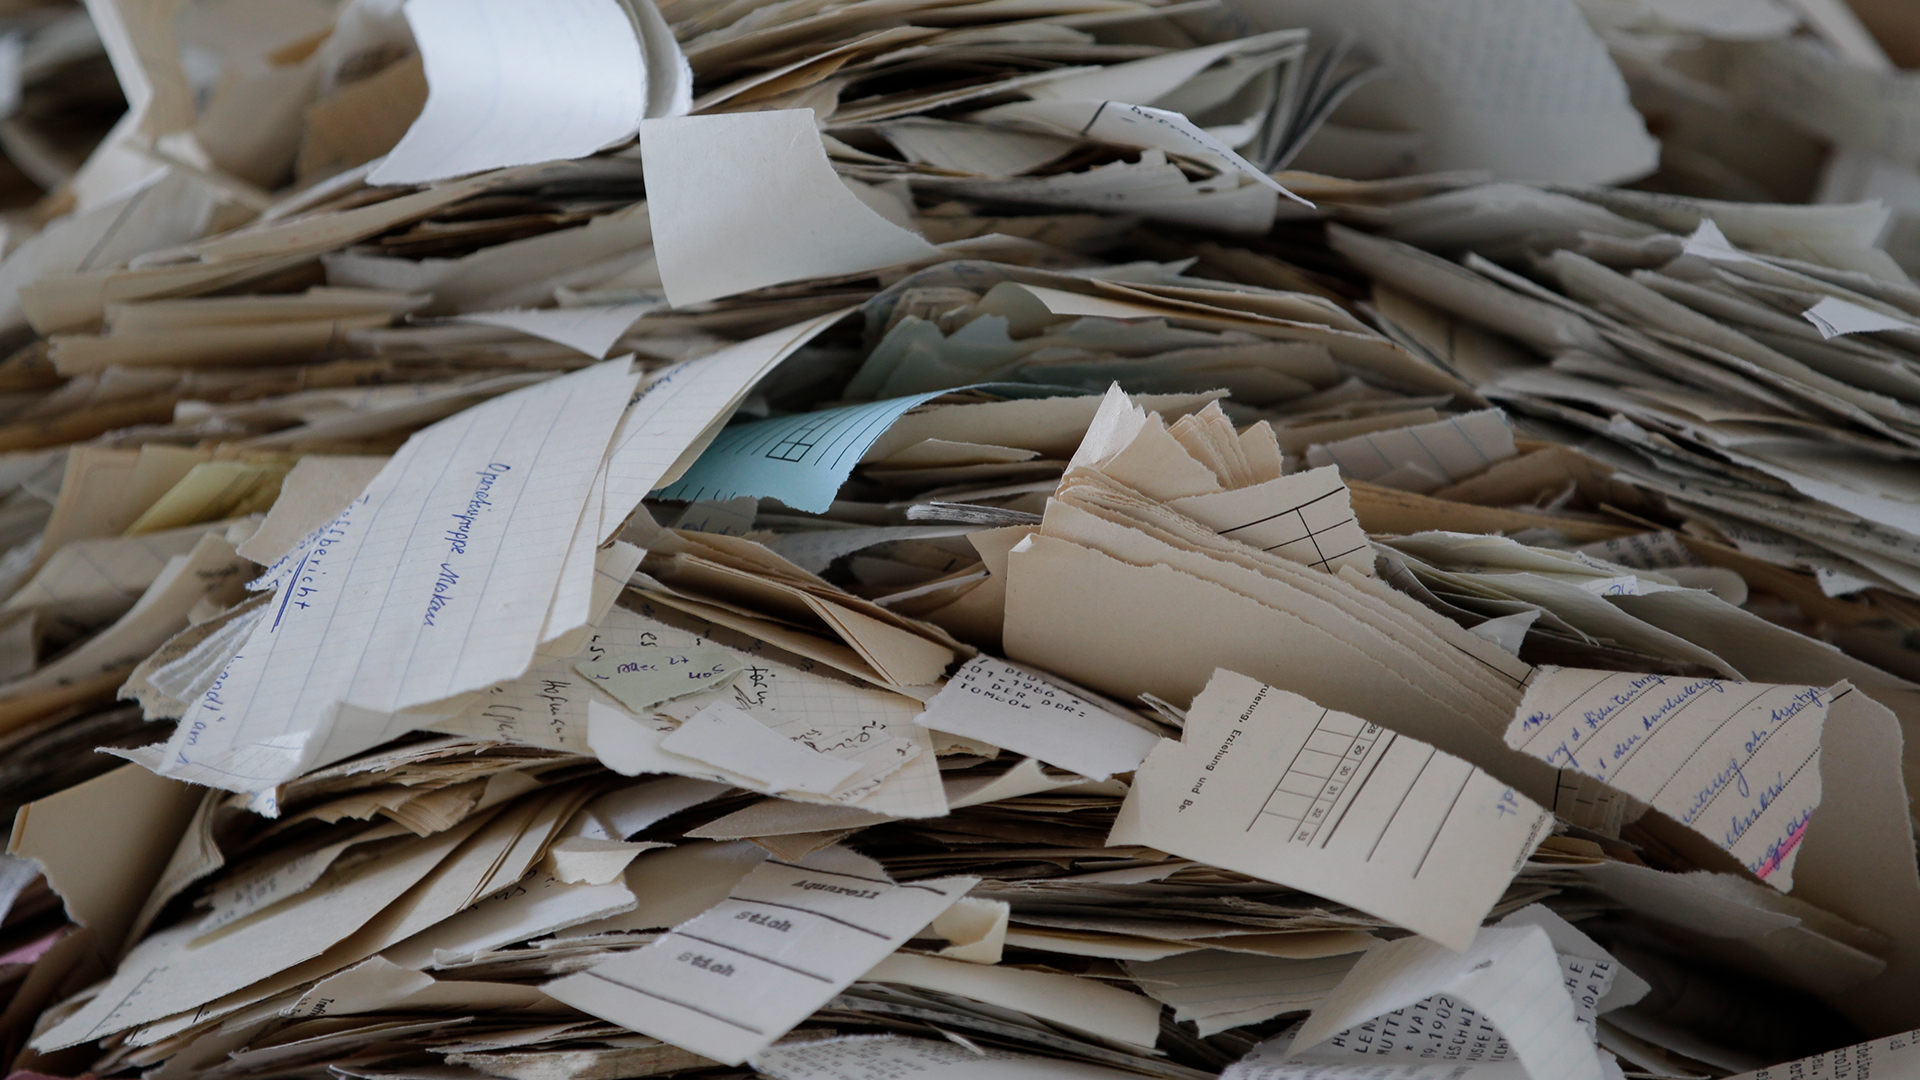 Poskus digitalne rekonstrukcije uničenih dokumentov nekdanje vzhodnonemške tajne policije Stasi je spodletel